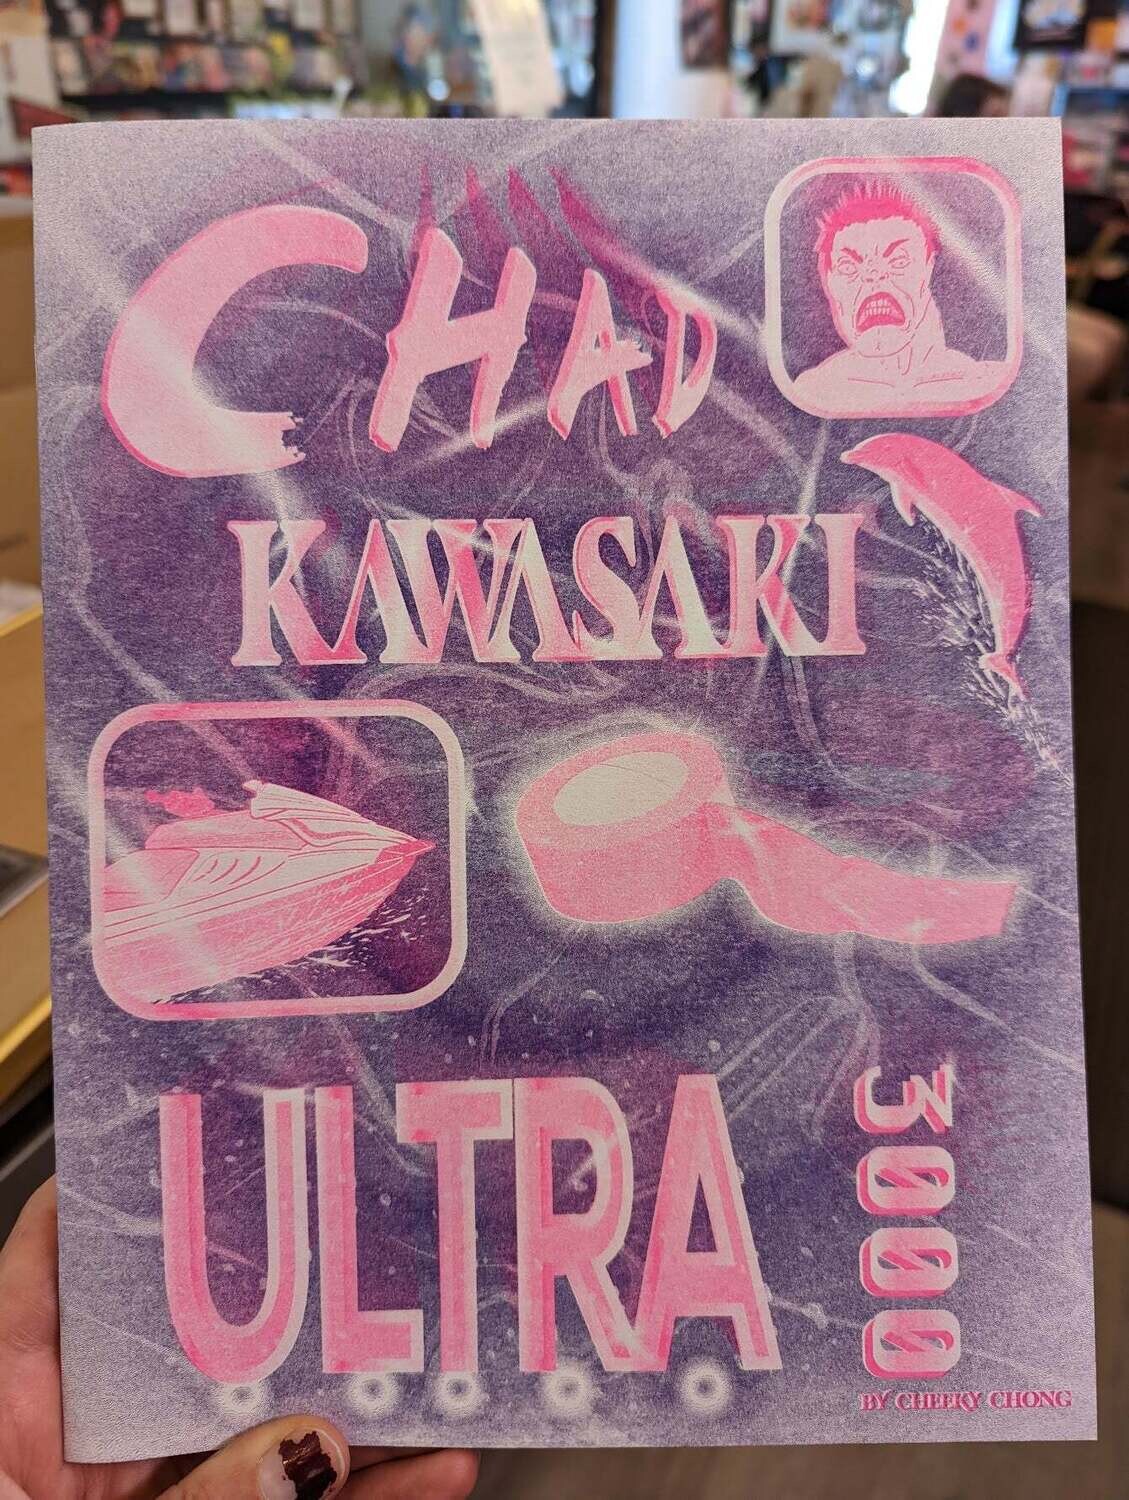 Chad Kawasaki Ultra 3000 - Zine by Cheeky Chong